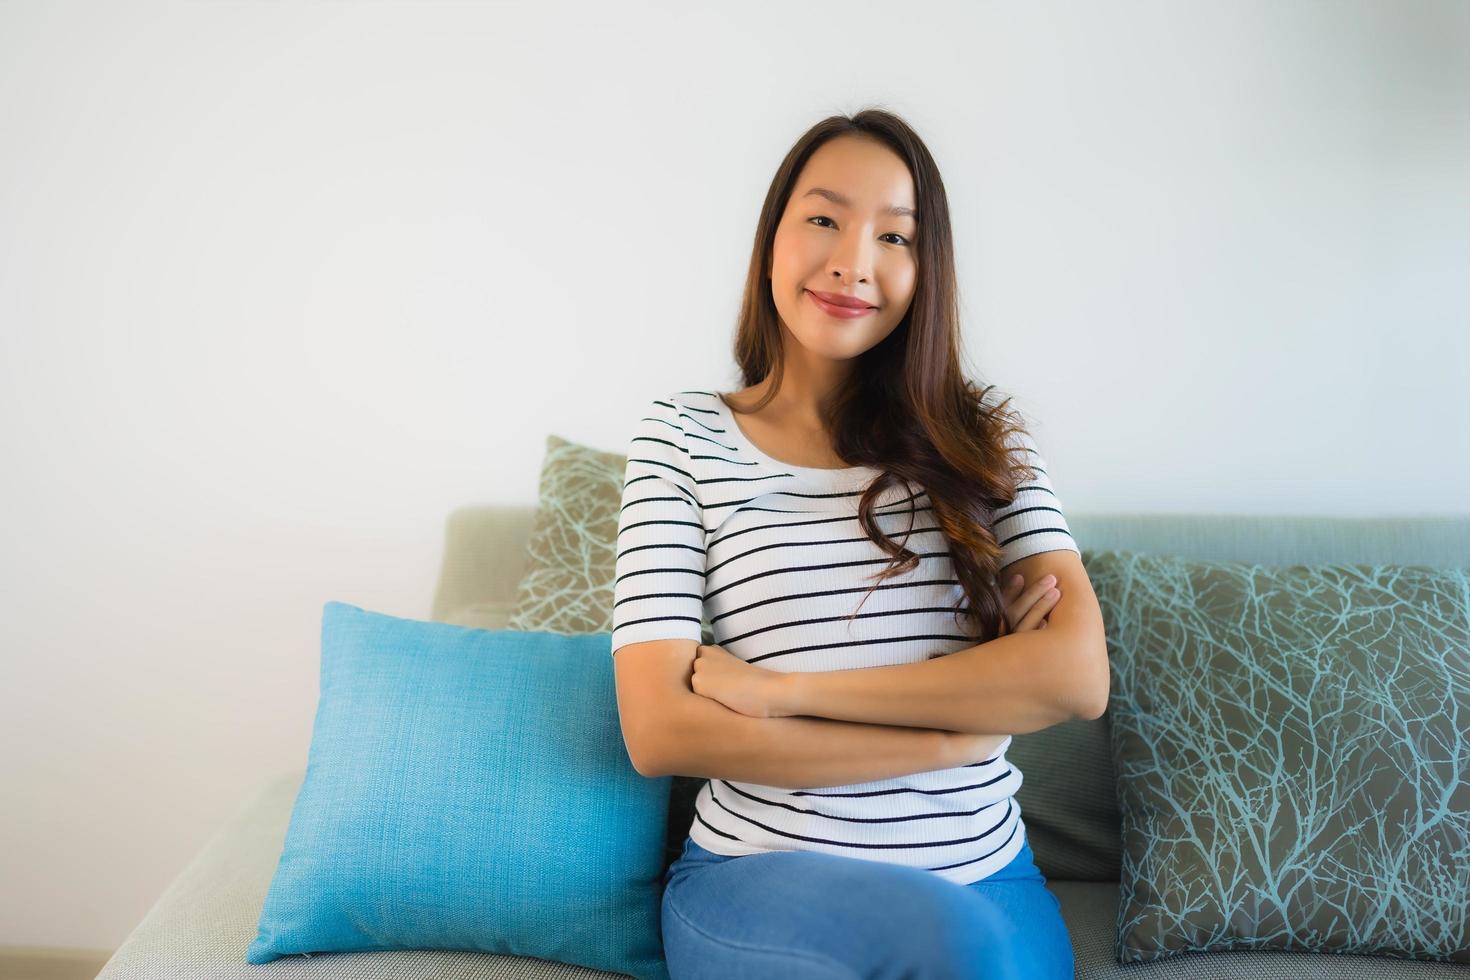 Porträt schöne junge asiatische Frau Lächeln glücklich auf dem Sofa foto